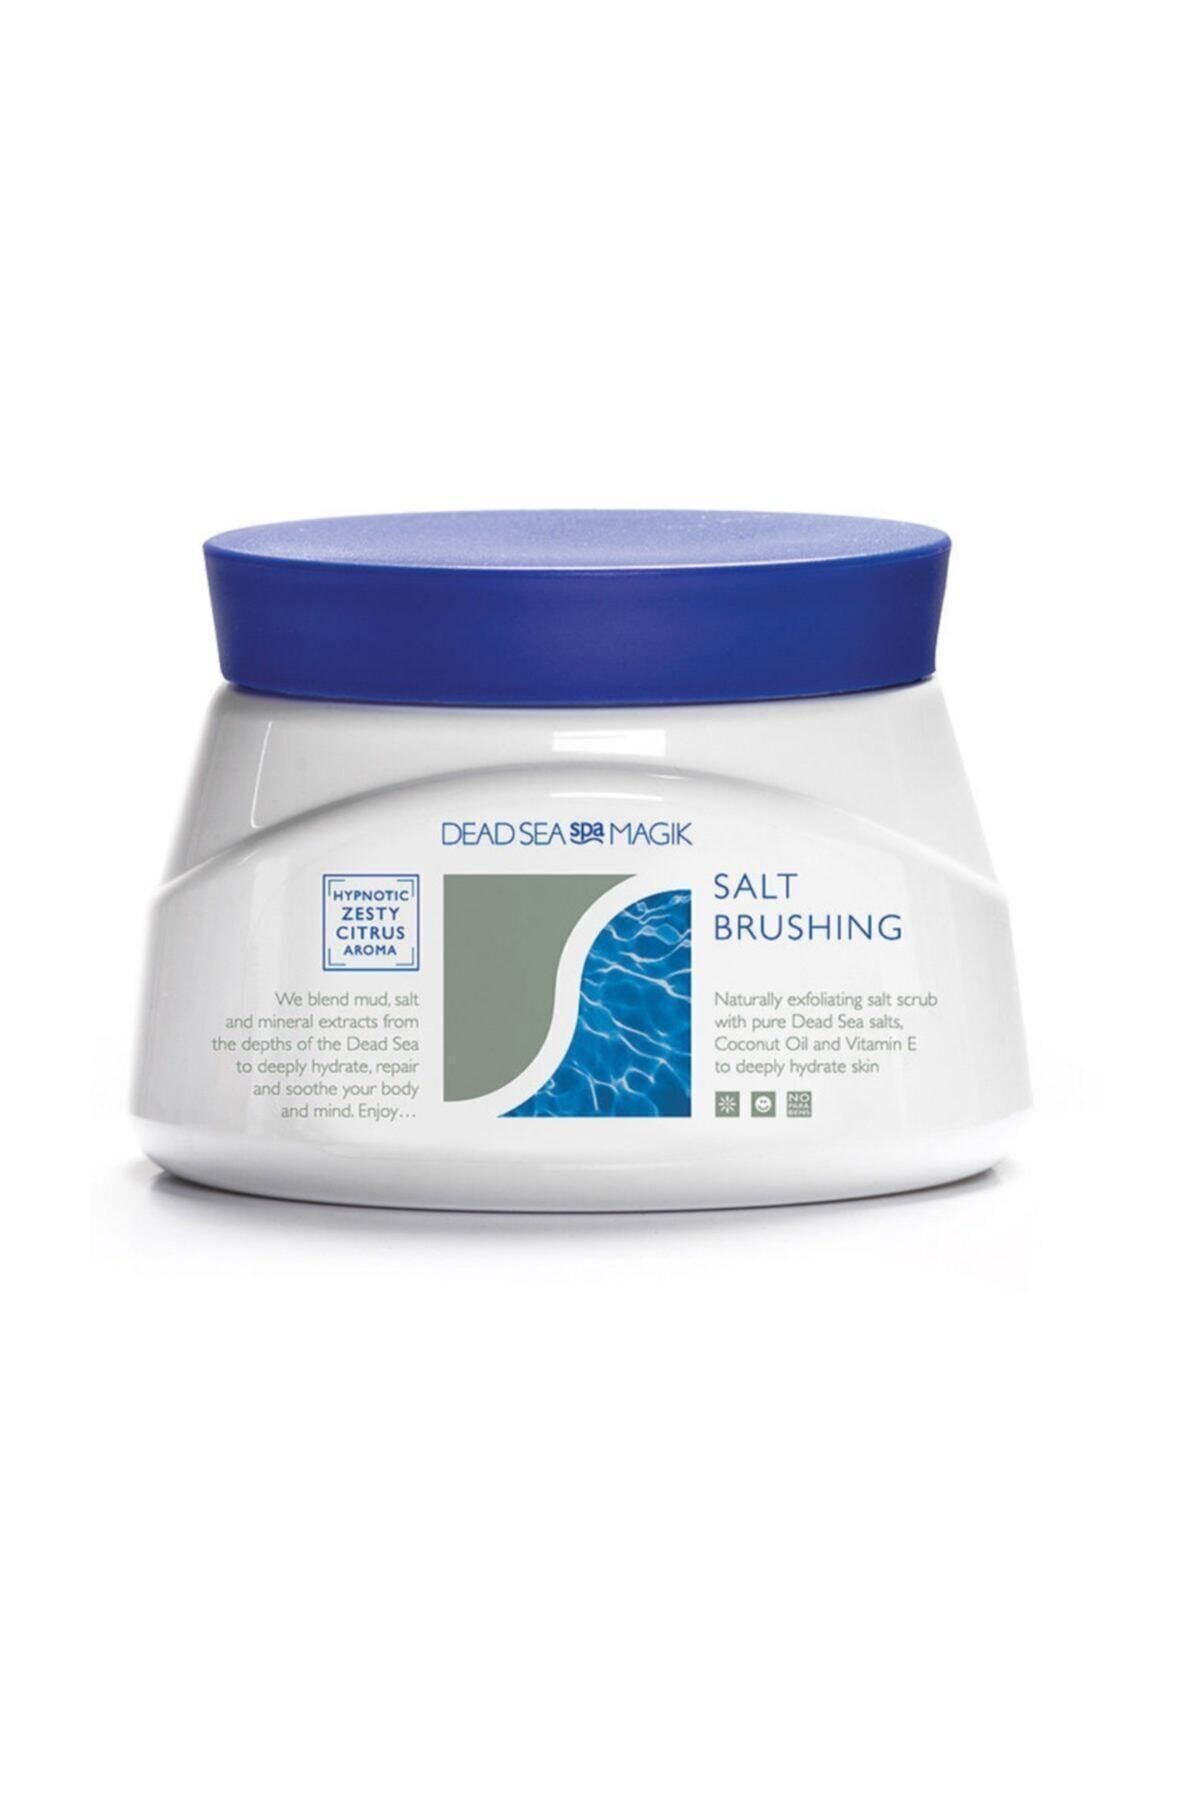 DEAD SEA spa MAGIK Deniz Mineralleri Içeren Vücut Peelingi Salt Brushing 500 g 5018365009700